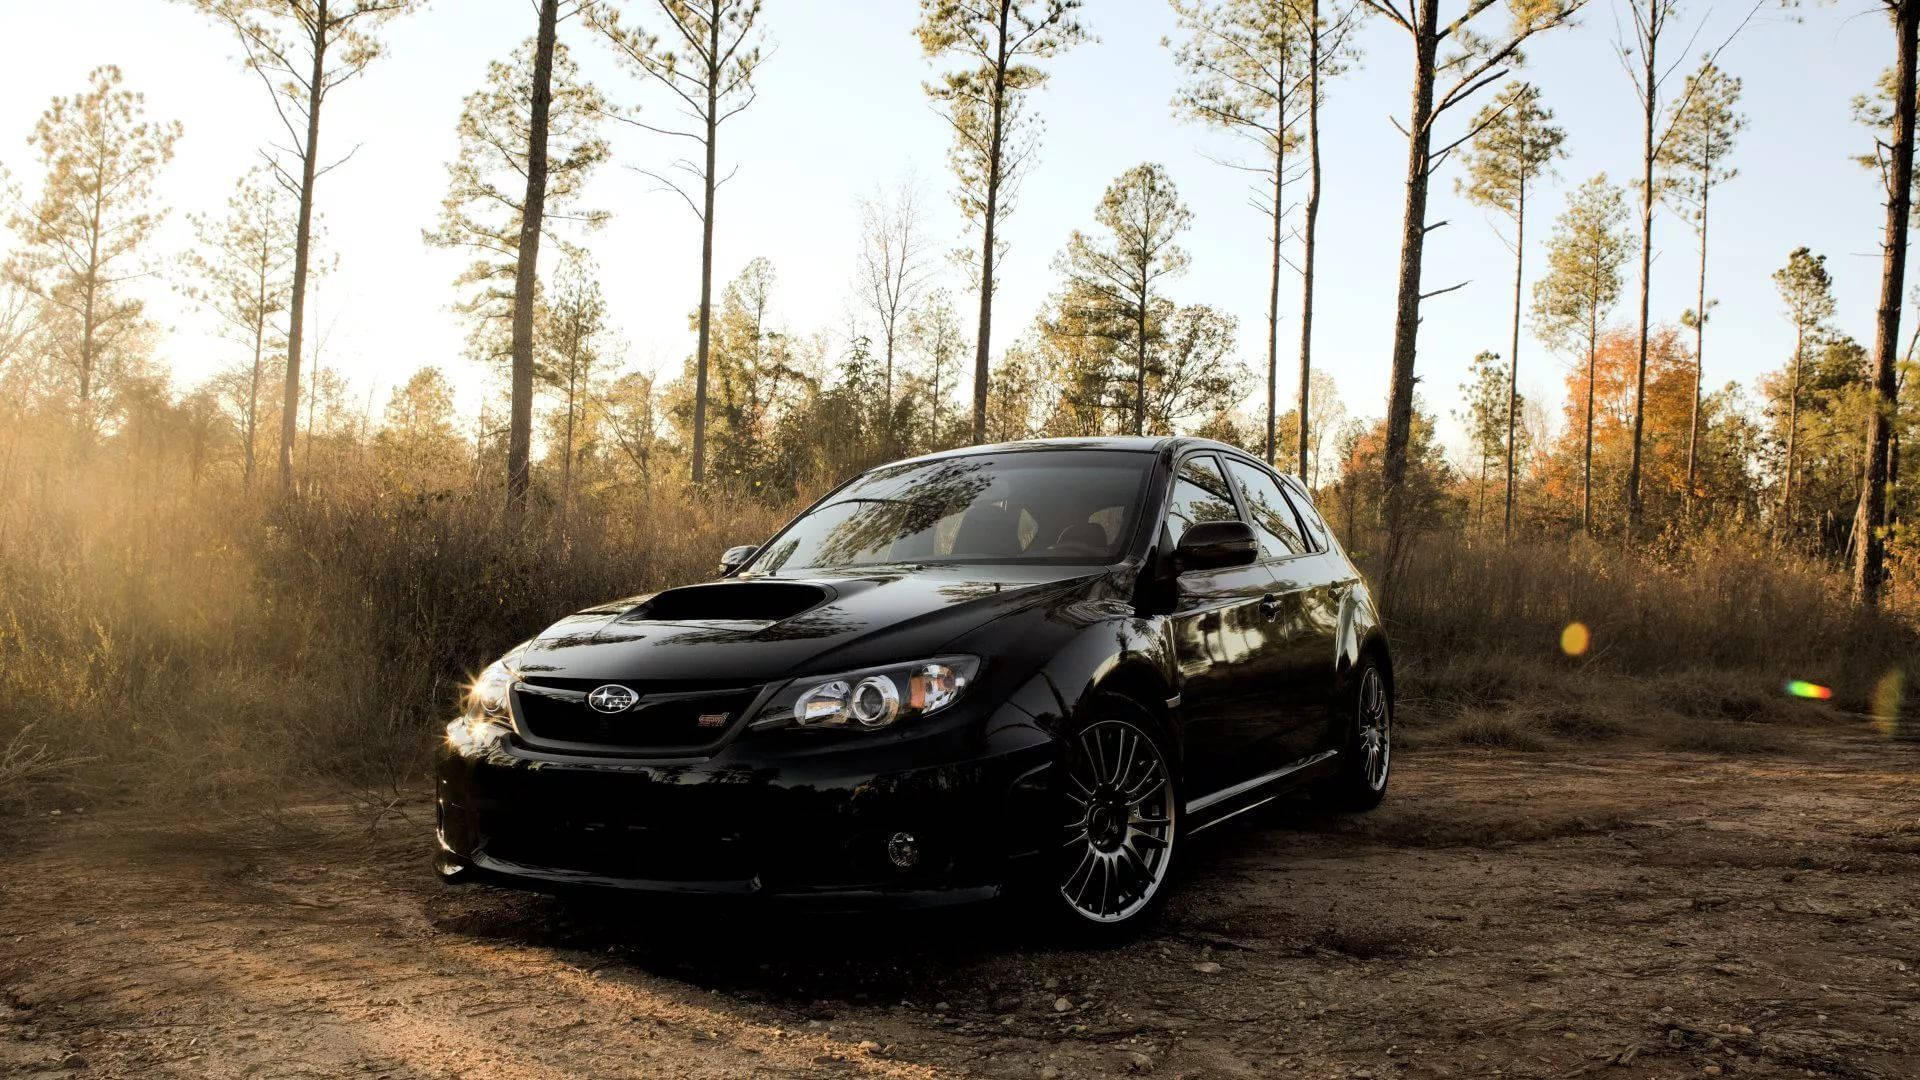 Subaru Impreza In The Woods